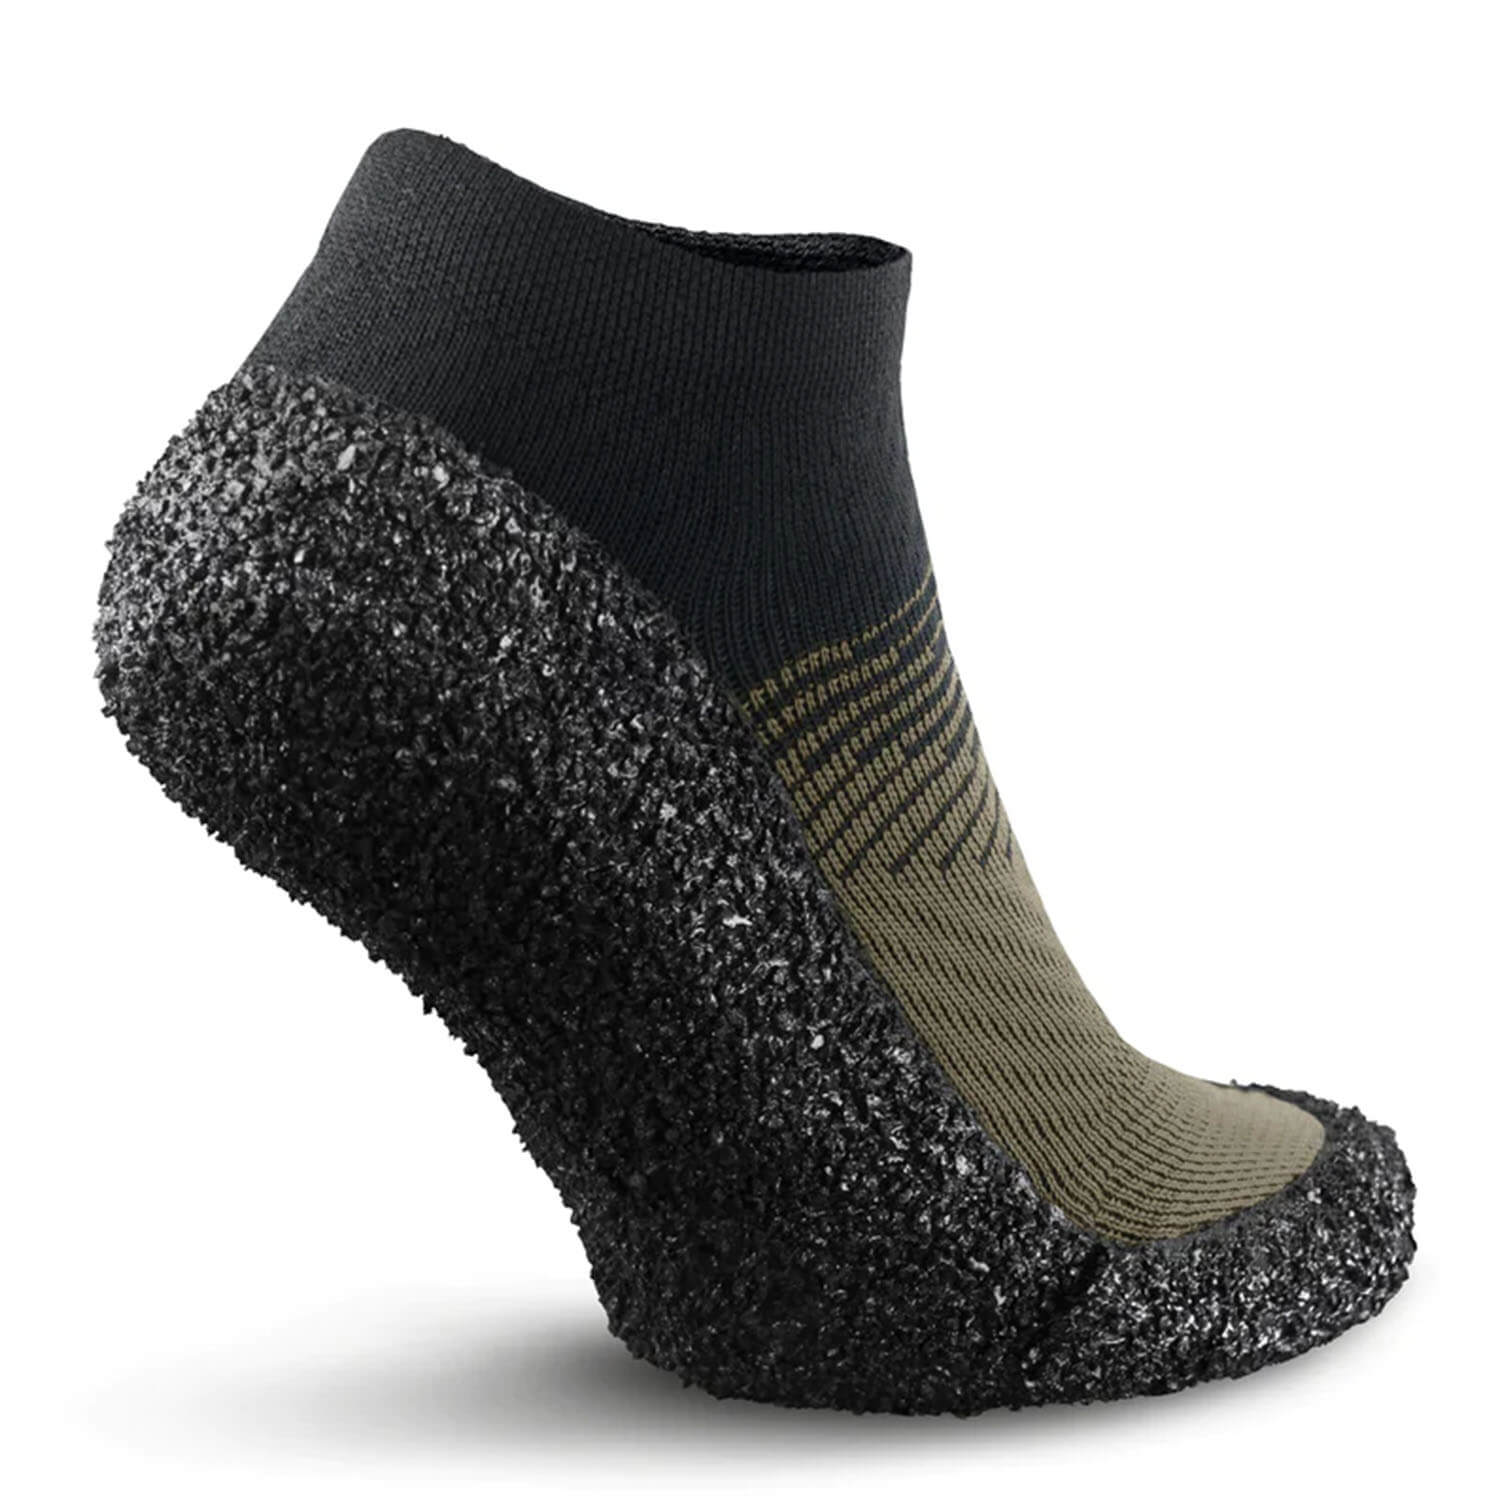 Skinners stalking socks Comfort 2.0 (Moss)